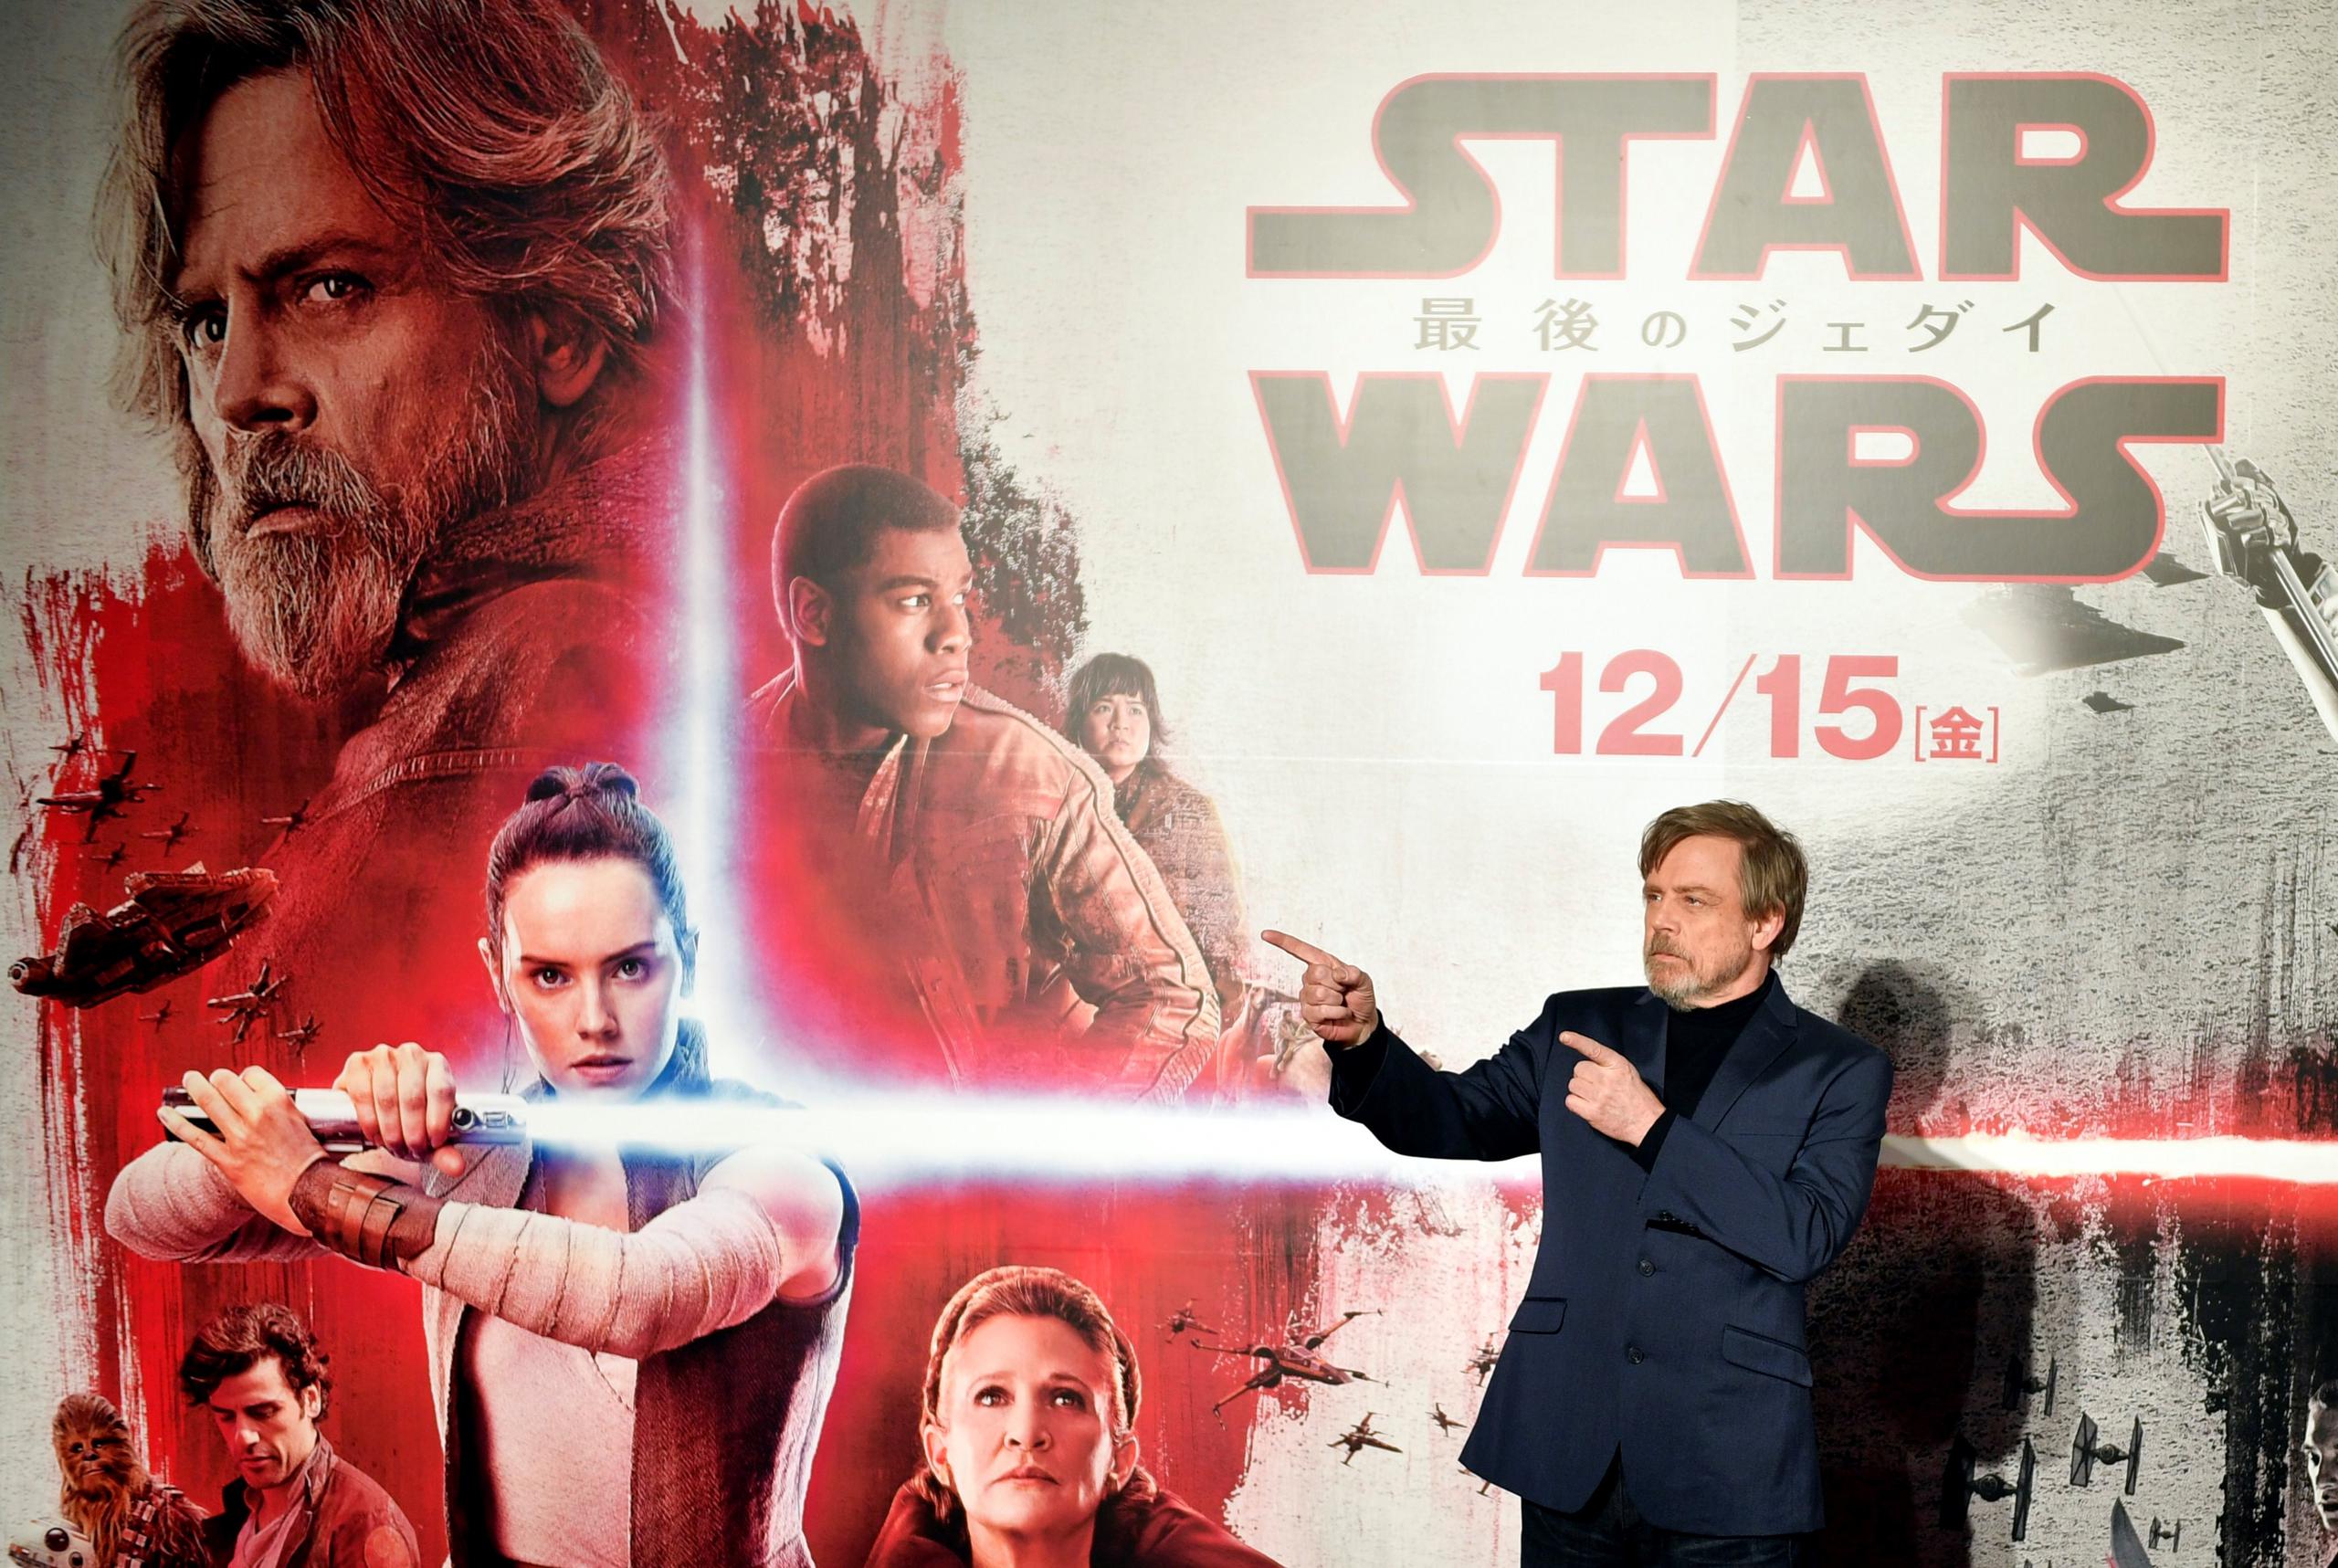 El más famoso guerrero Jedi cinematográfico, de 71 años, reveló que no ha vendido artículos autografiados desde 2017, cuando se estrenó “Star Wars: The Last Jedi”.